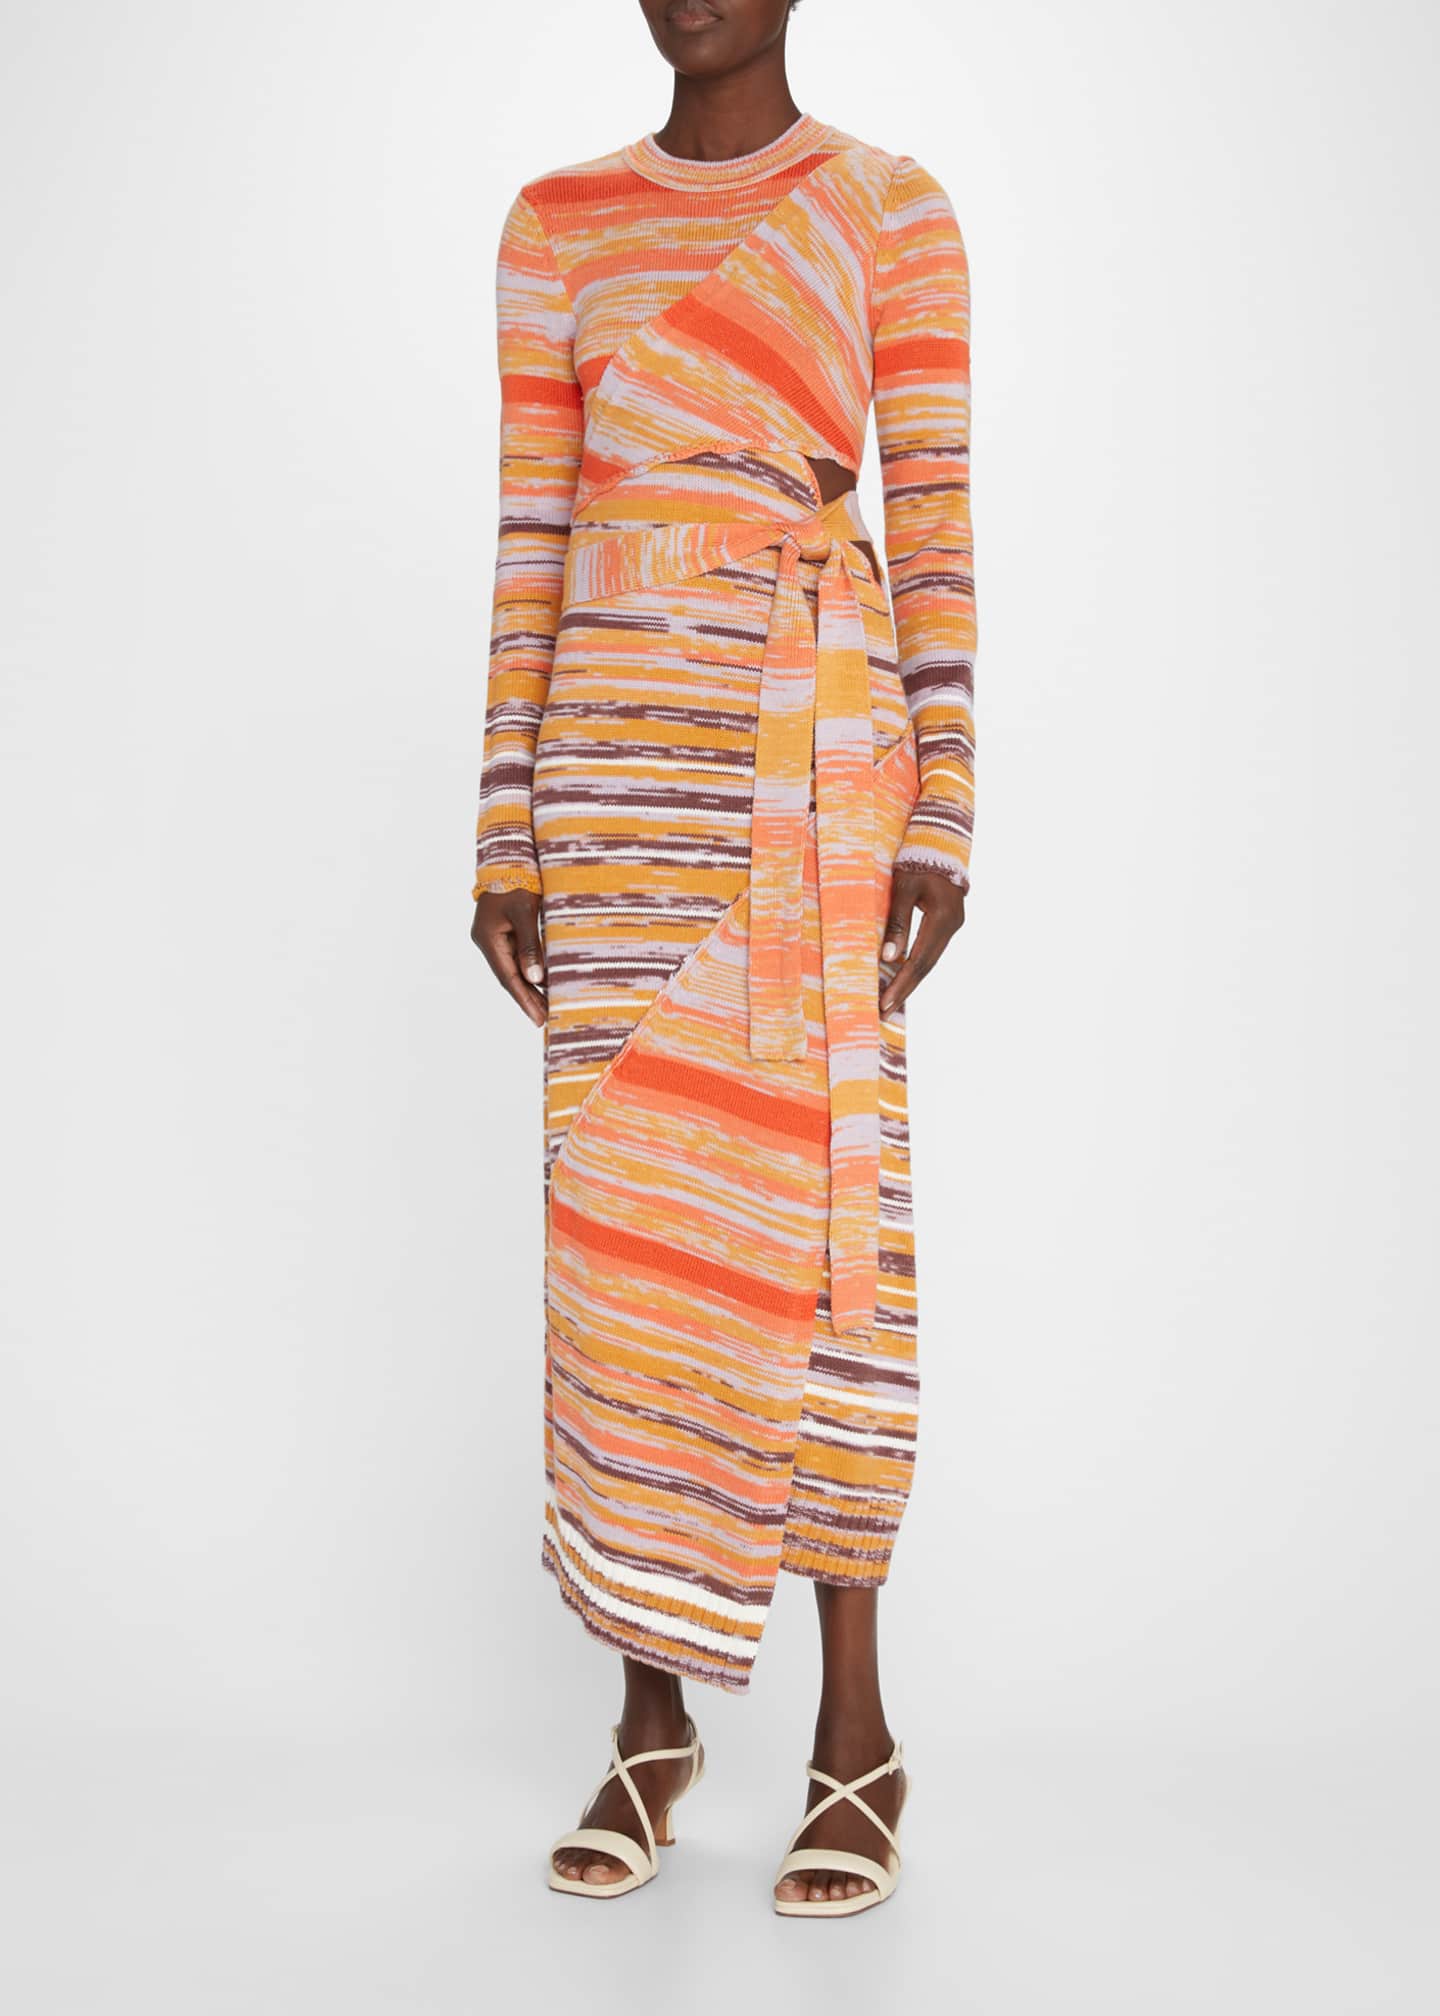 Jonathan Simkhai Selah Wrap Cutout Maxi Dress - Bergdorf Goodman